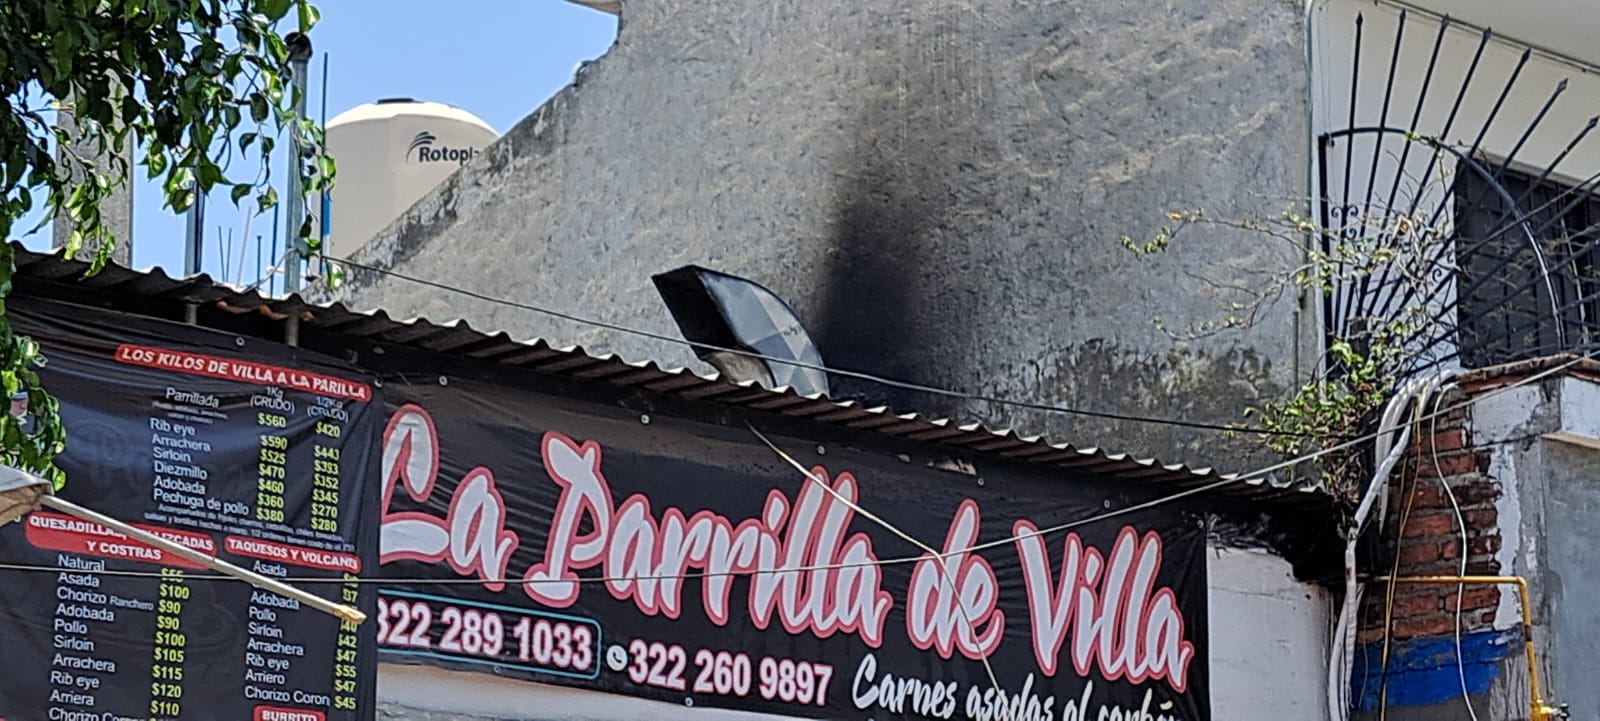 Incendio moviliza a Bomberos: Arde chimenea en restaurante de Puerto Vallarta